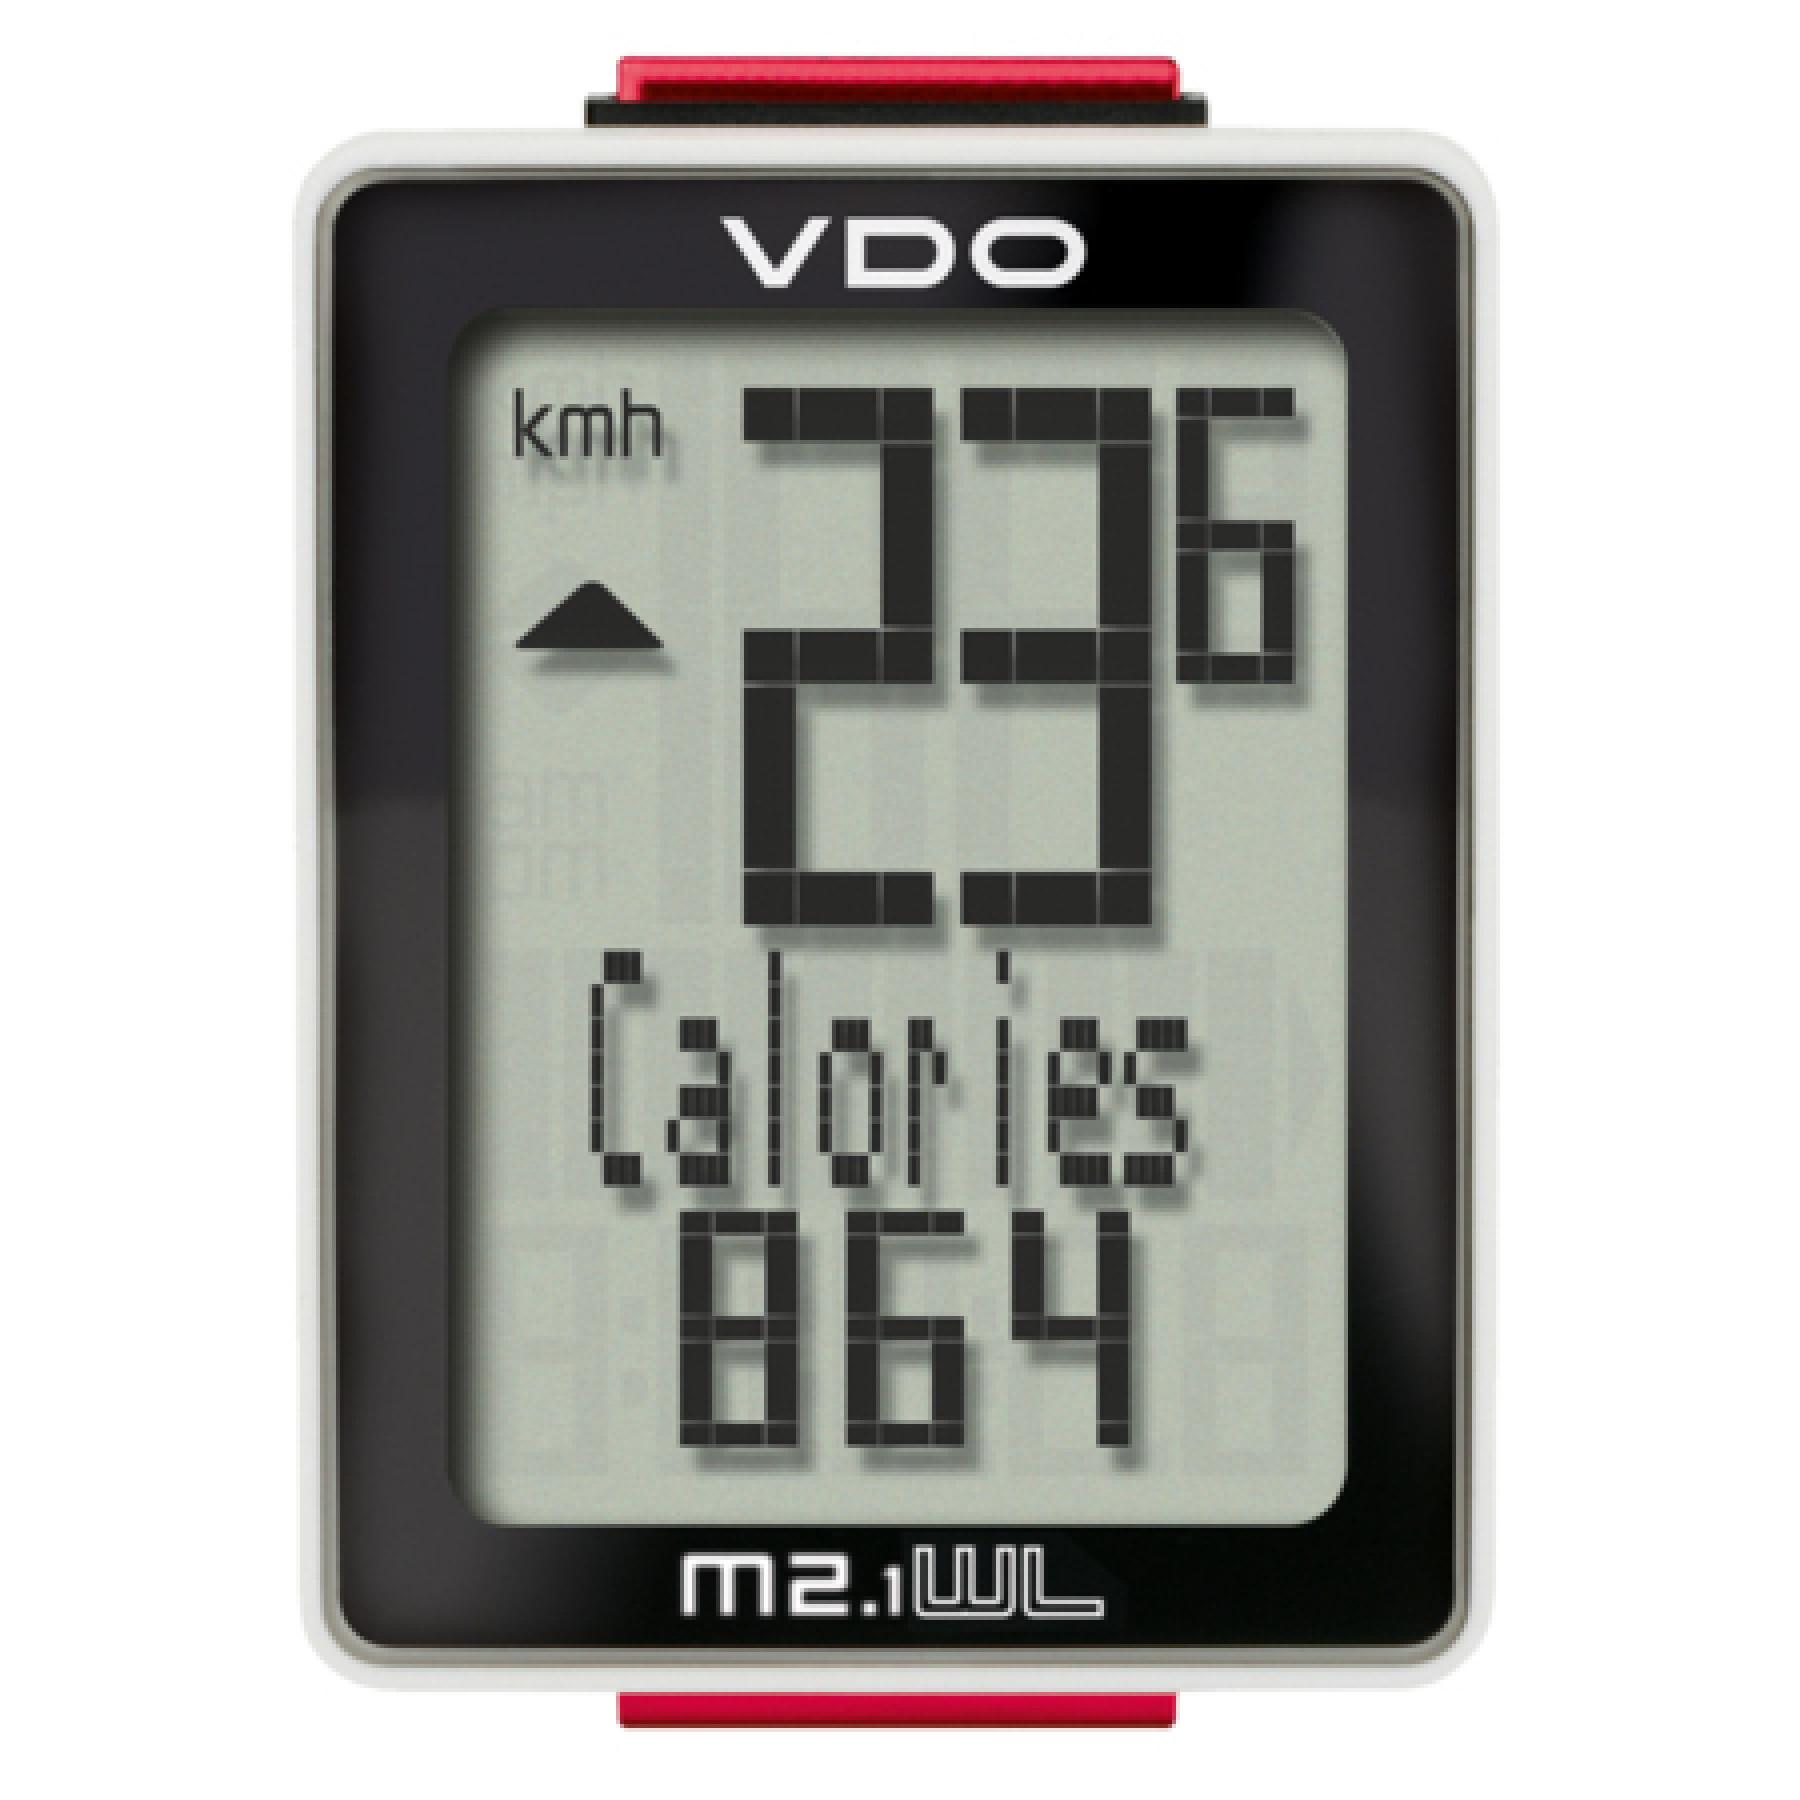 Contador VDO M2.1 WL